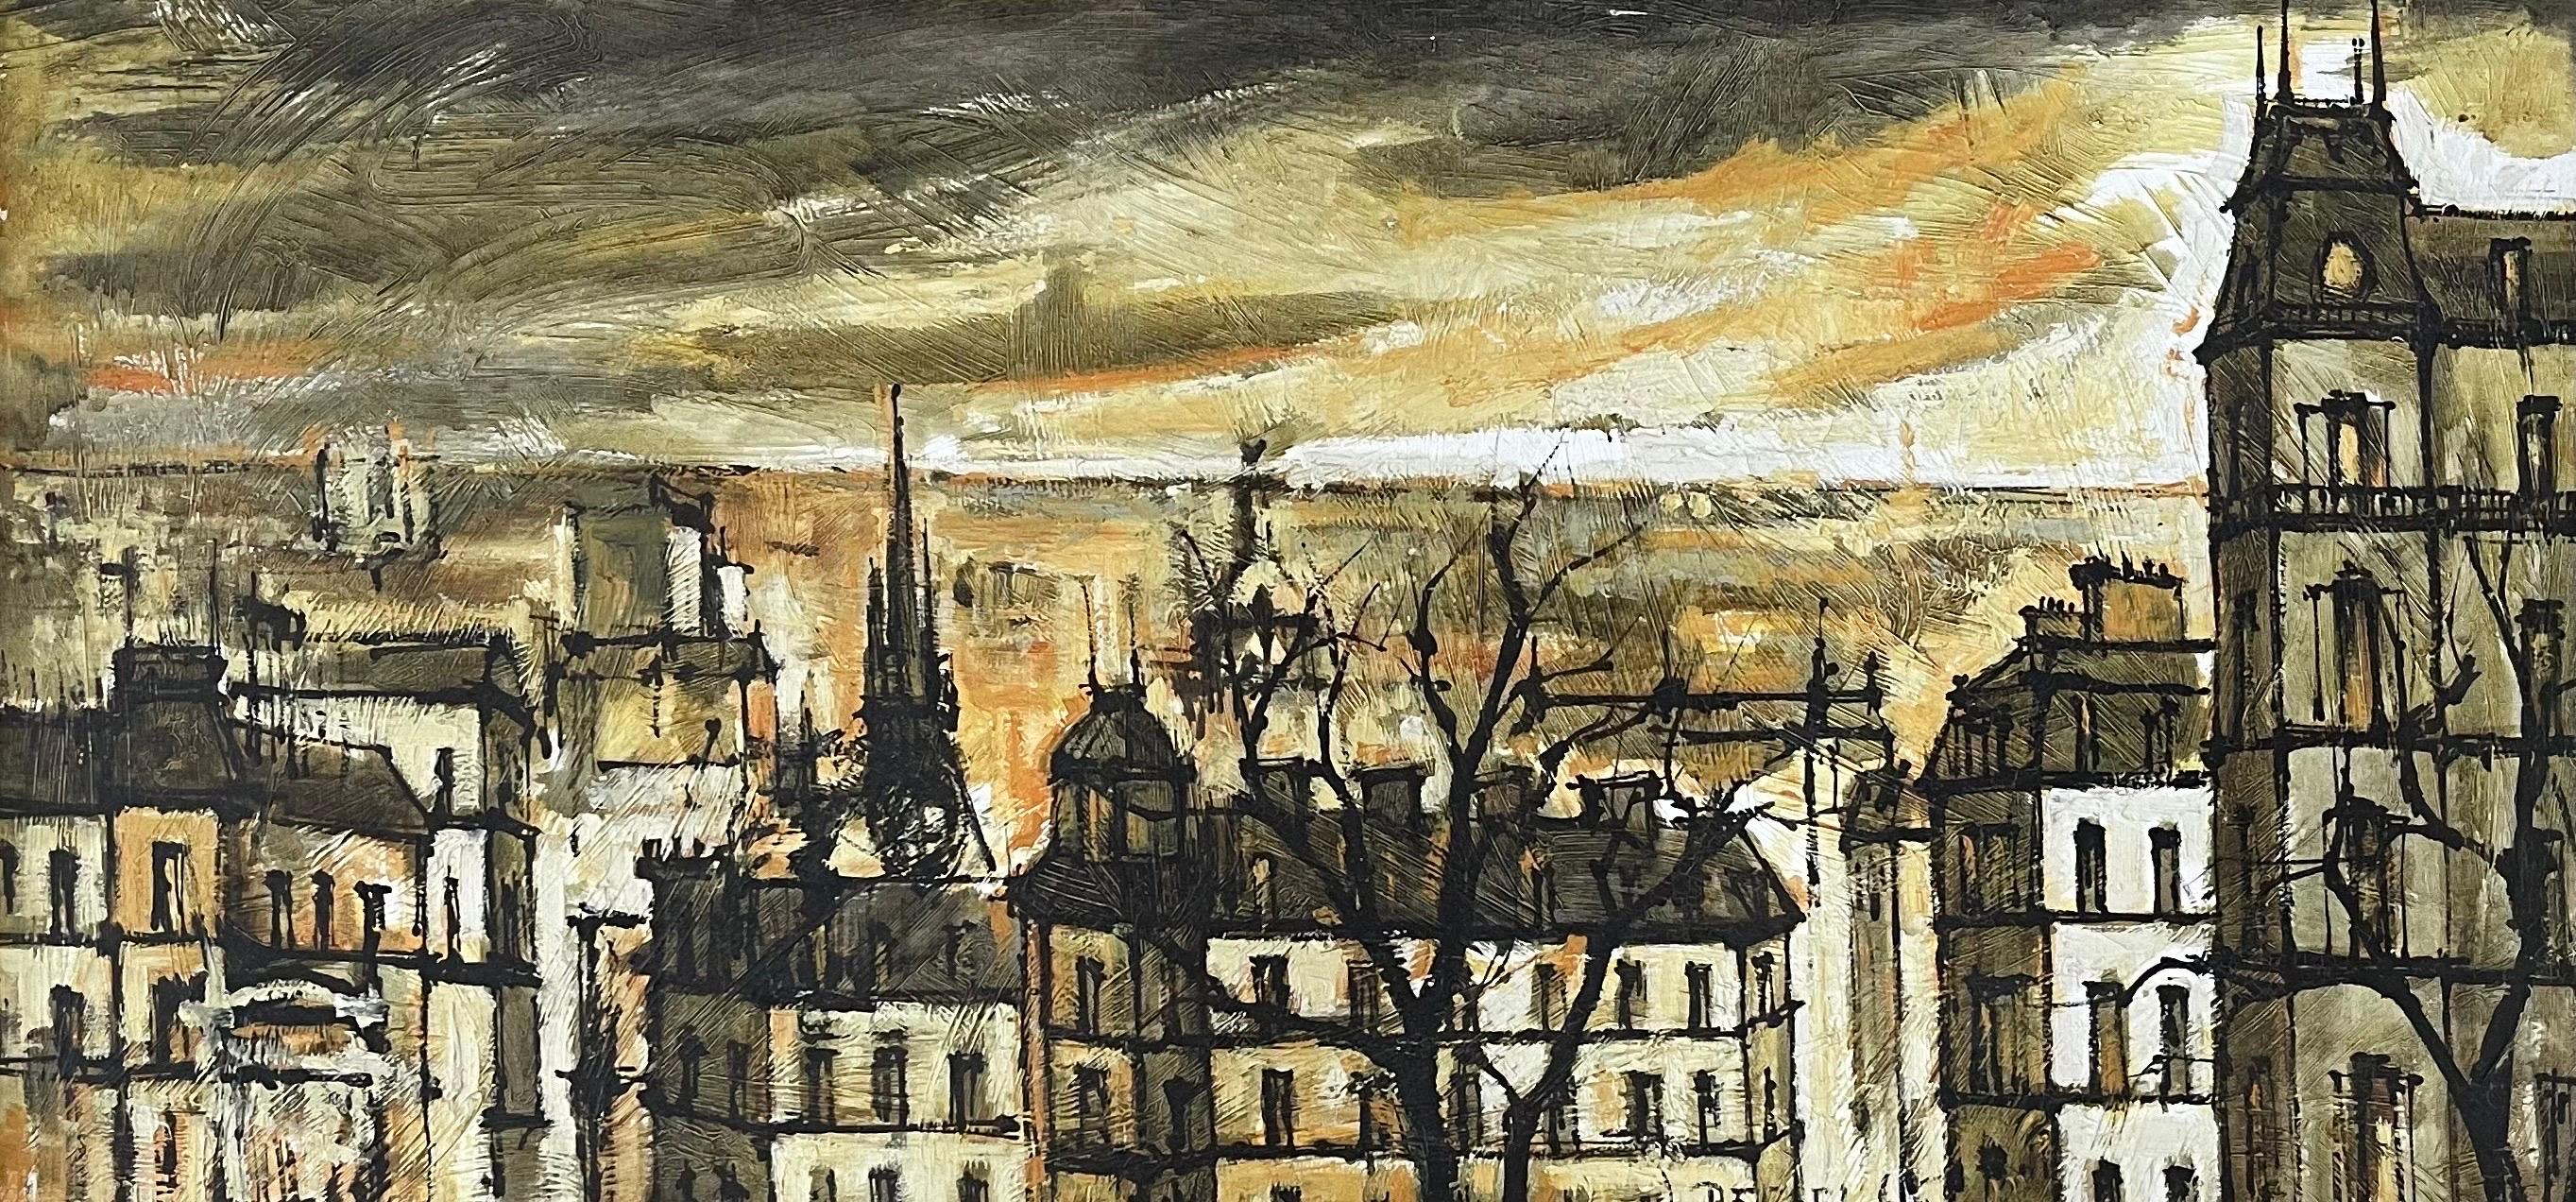 Grande peinture originale à l'huile sur toile d'un paysage urbain parisien, réalisée par l'artiste Jacques Pergel, vers les années 1960.  La peinture est très lumineuse, avec de gros coups de pinceau, et mesure un impressionnant 43